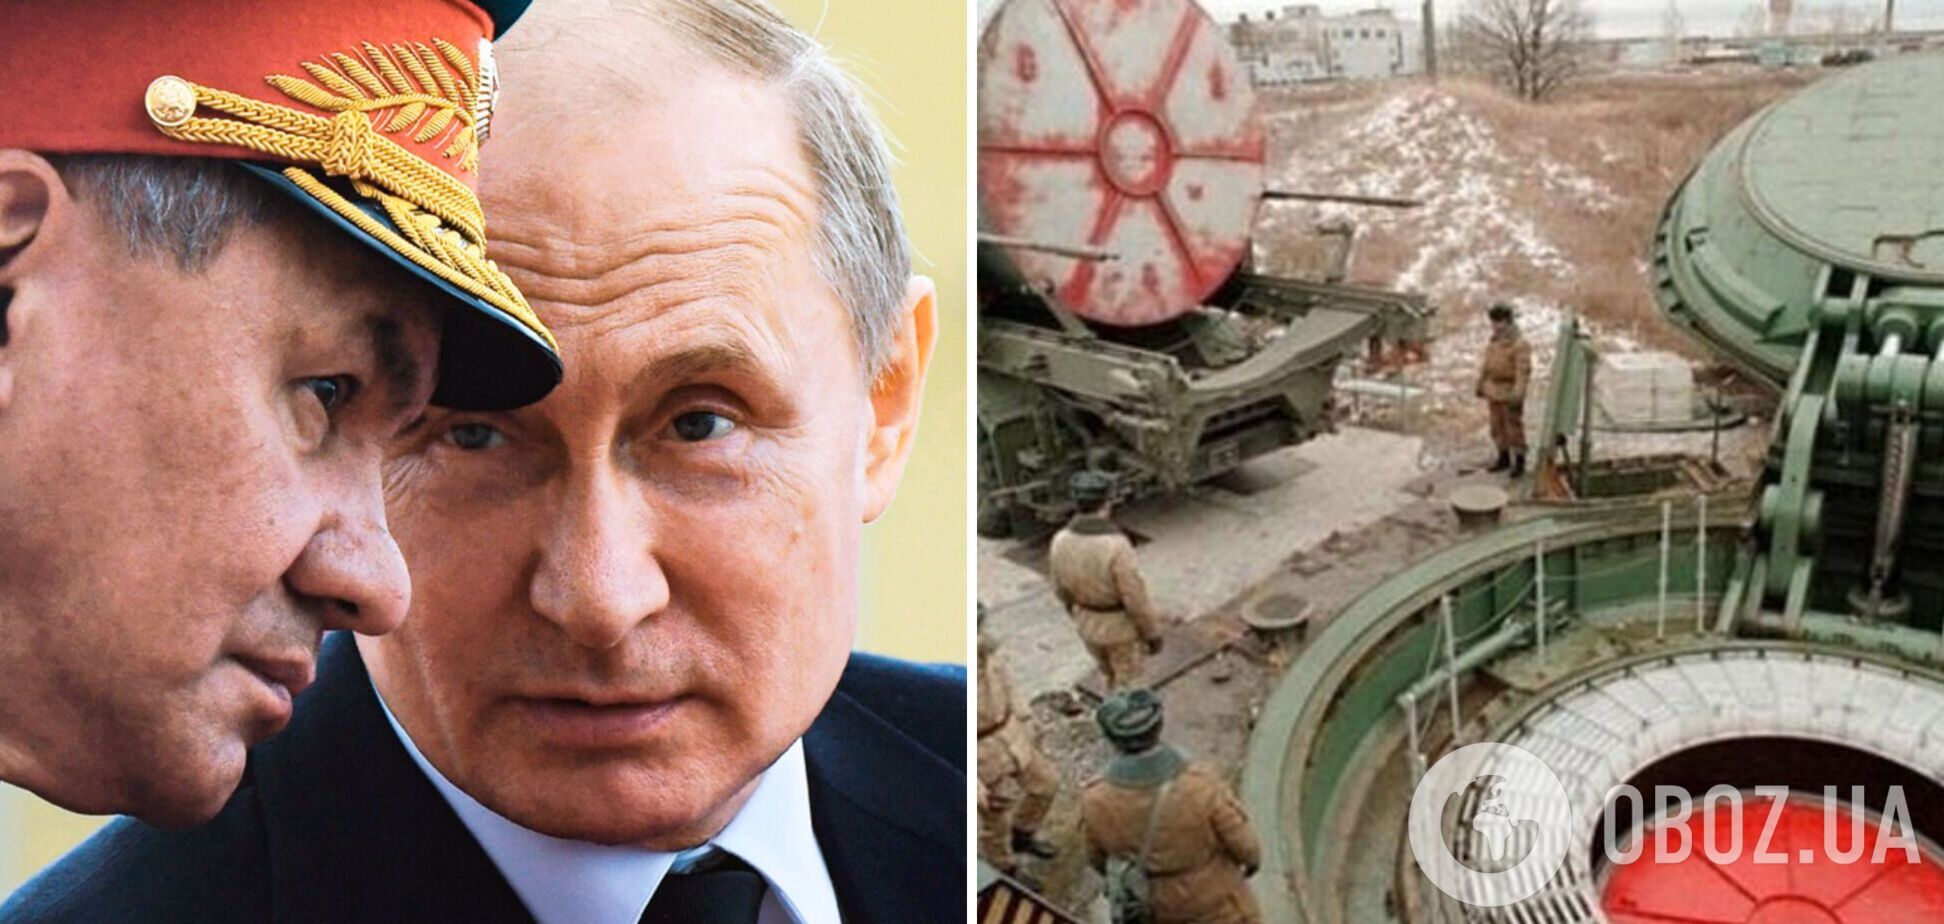 Жданов оценил вероятность применения ядерного оружия Россией и рассказал, куда может целиться Путин